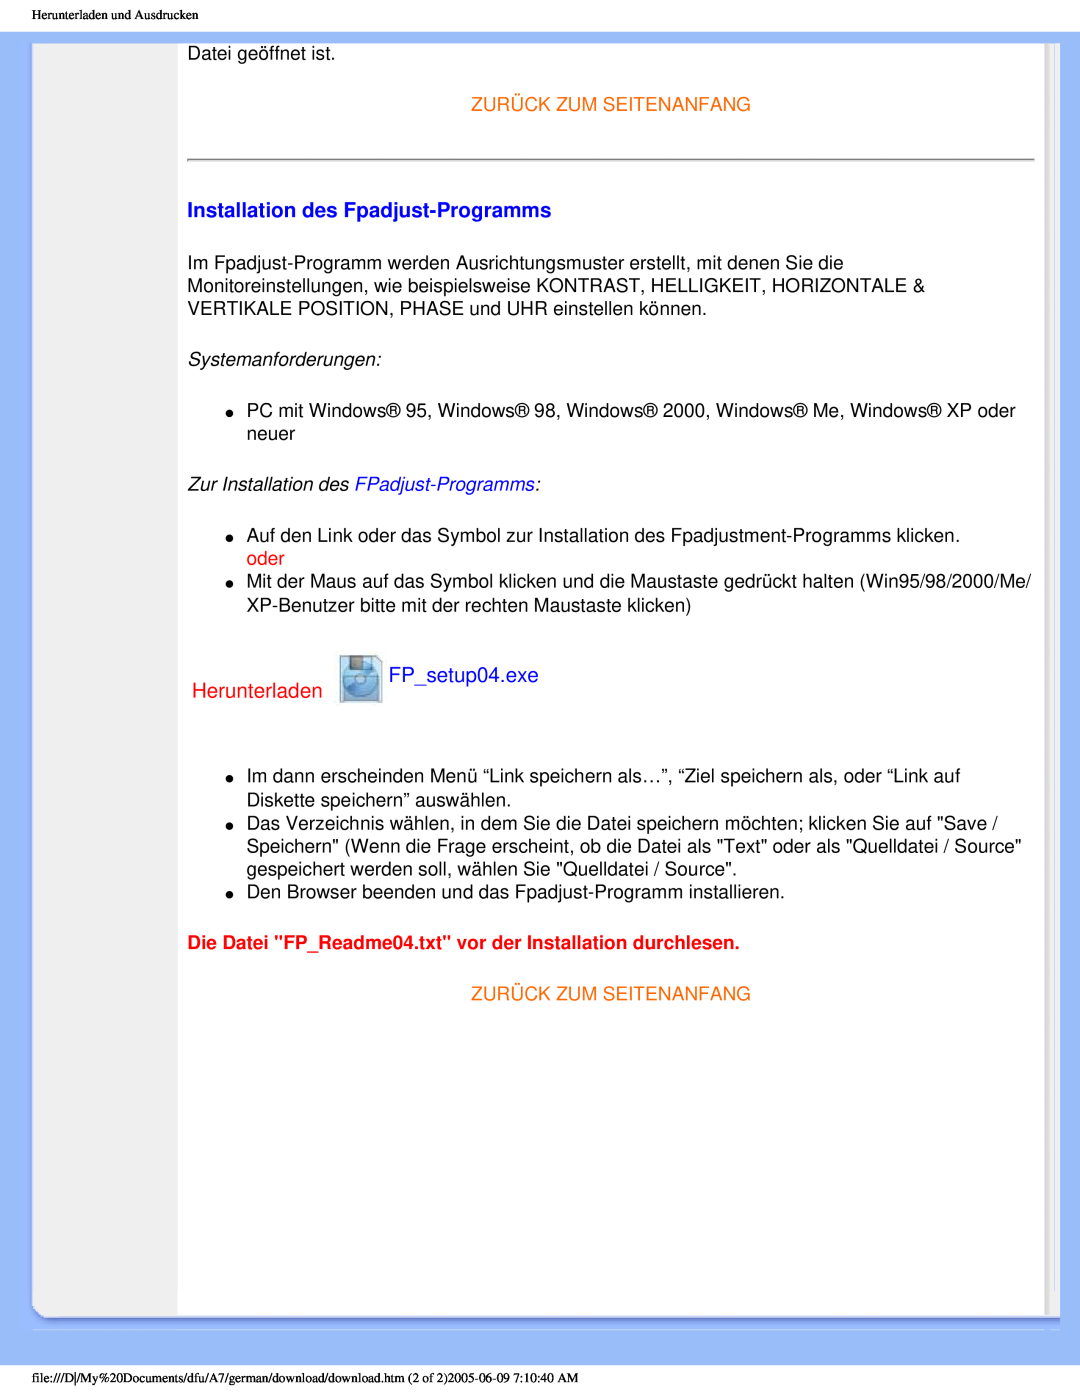 Philips 170p6 user manual Installation des Fpadjust-Programms, Zurück Zum Seitenanfang, Systemanforderungen 